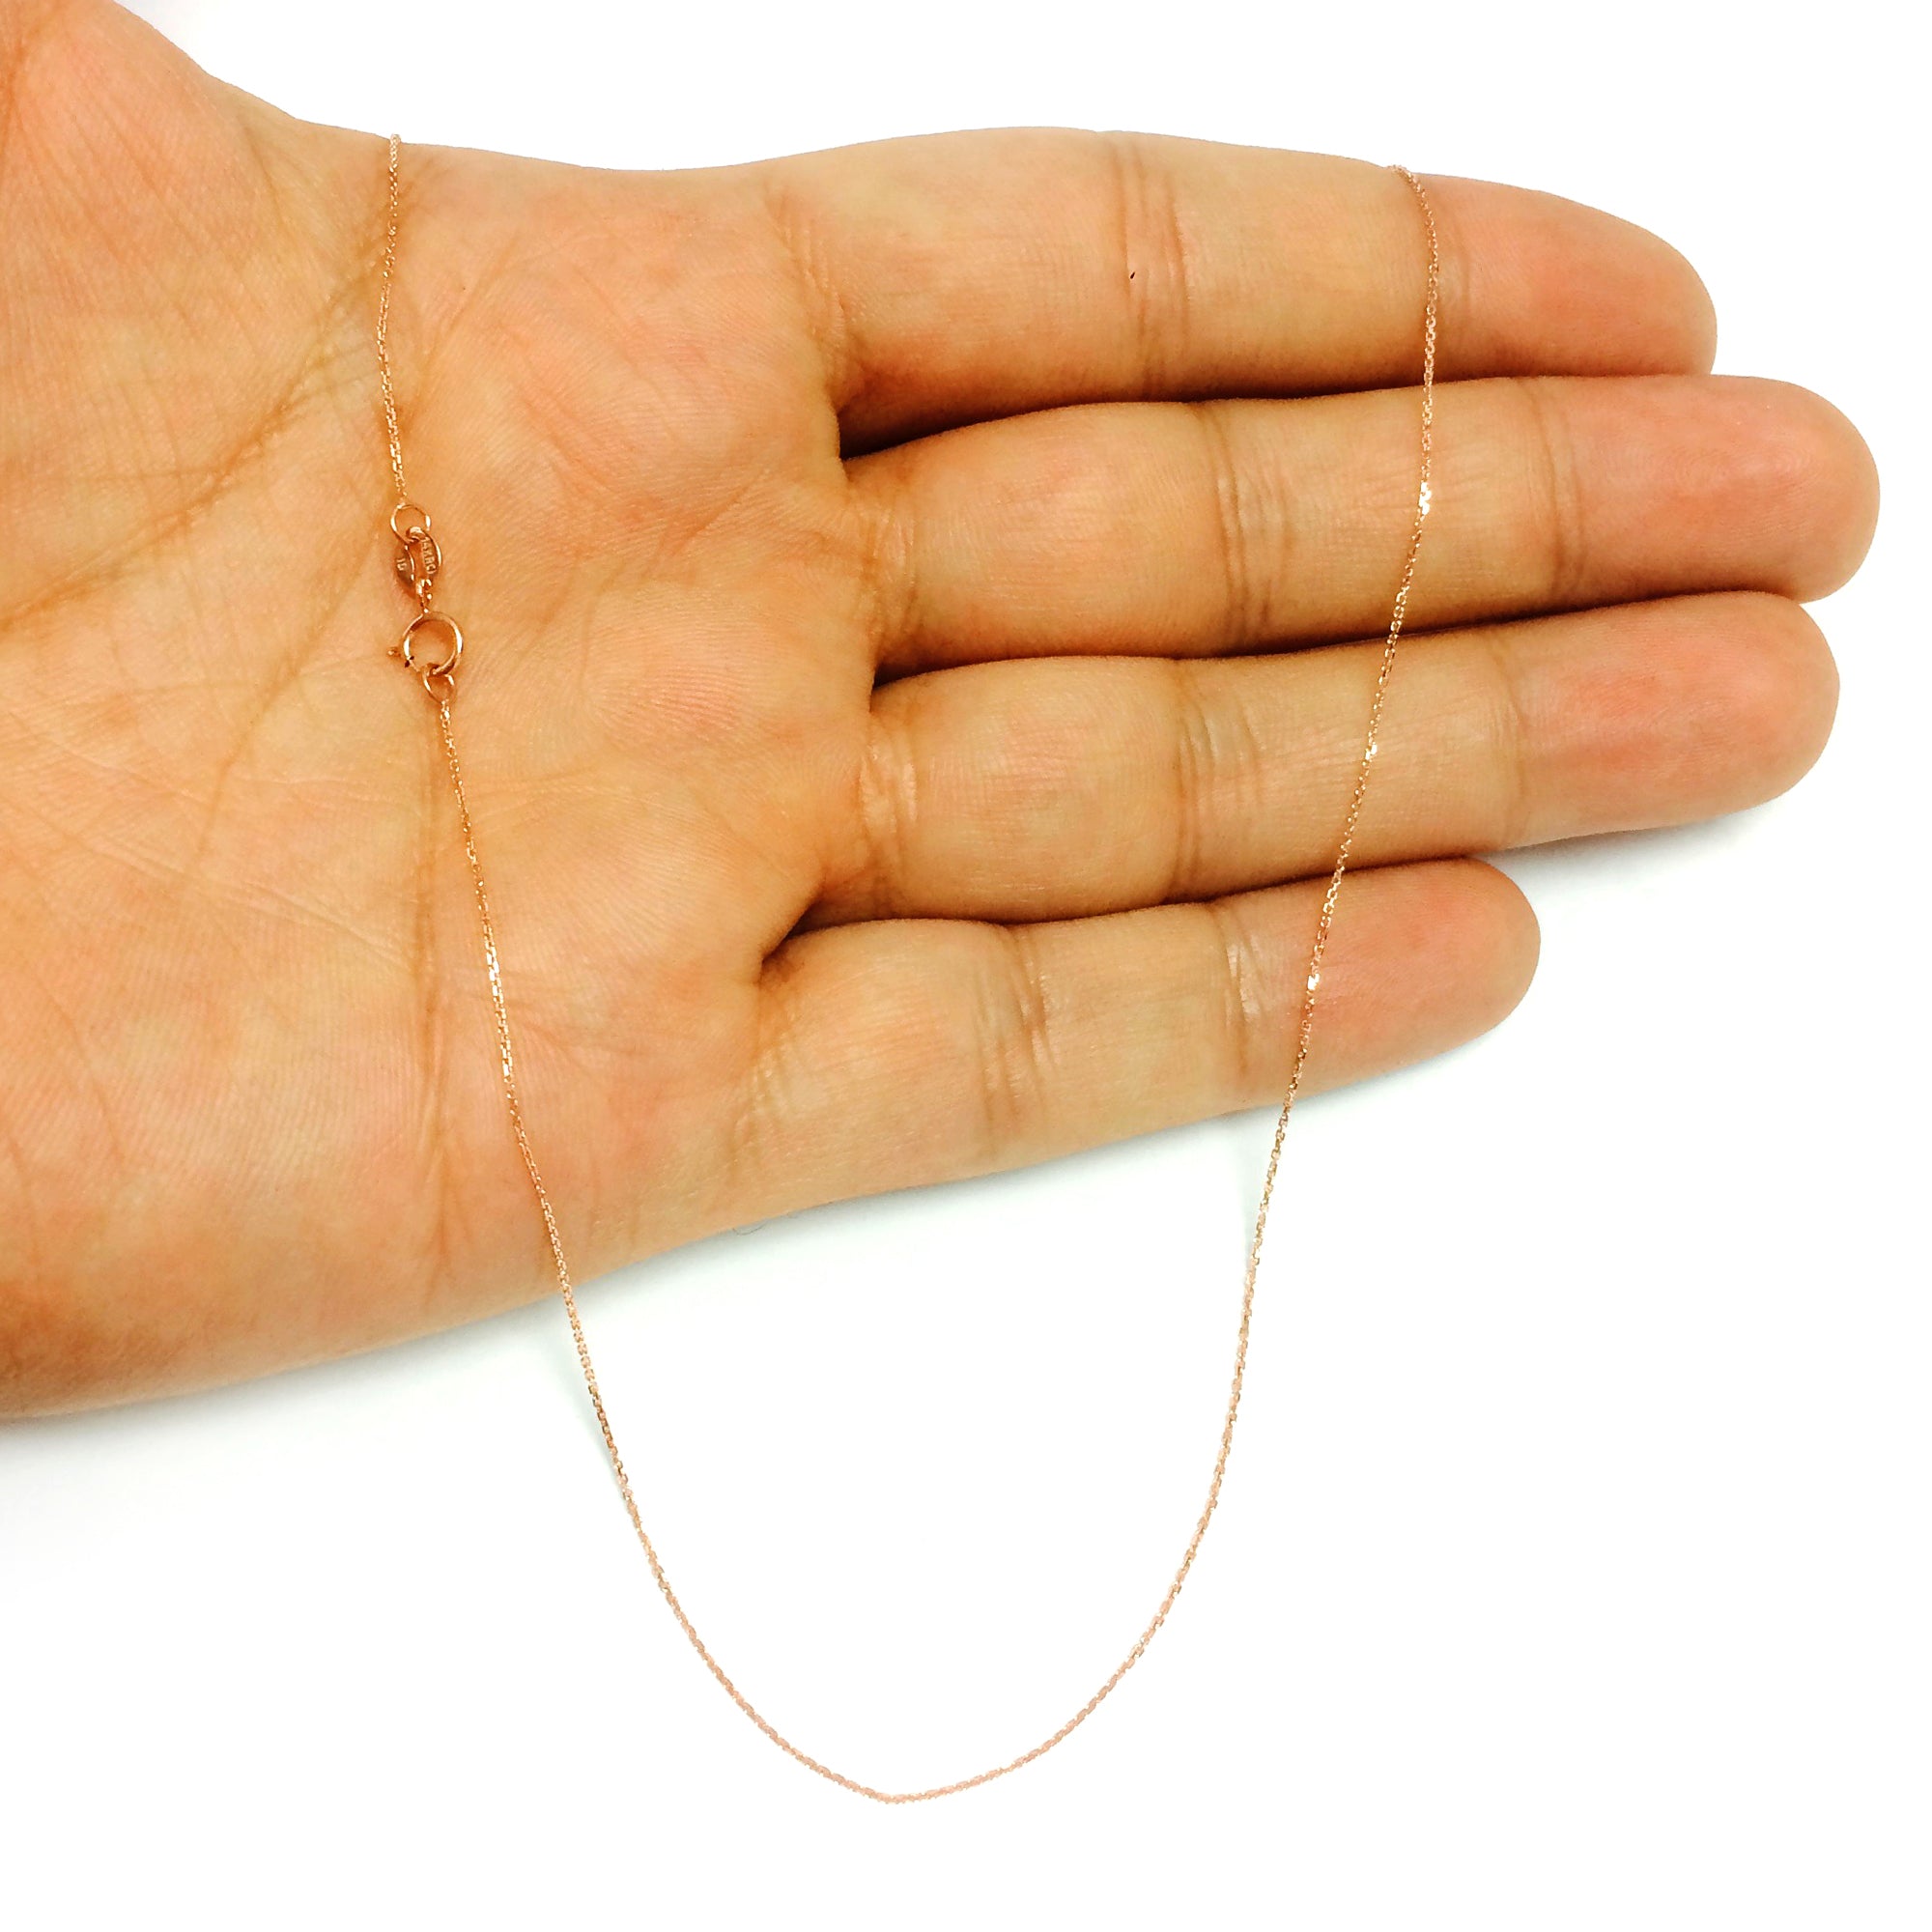 14k roseguld kabelkædekæde, 0,5 mm fine designersmykker til mænd og kvinder